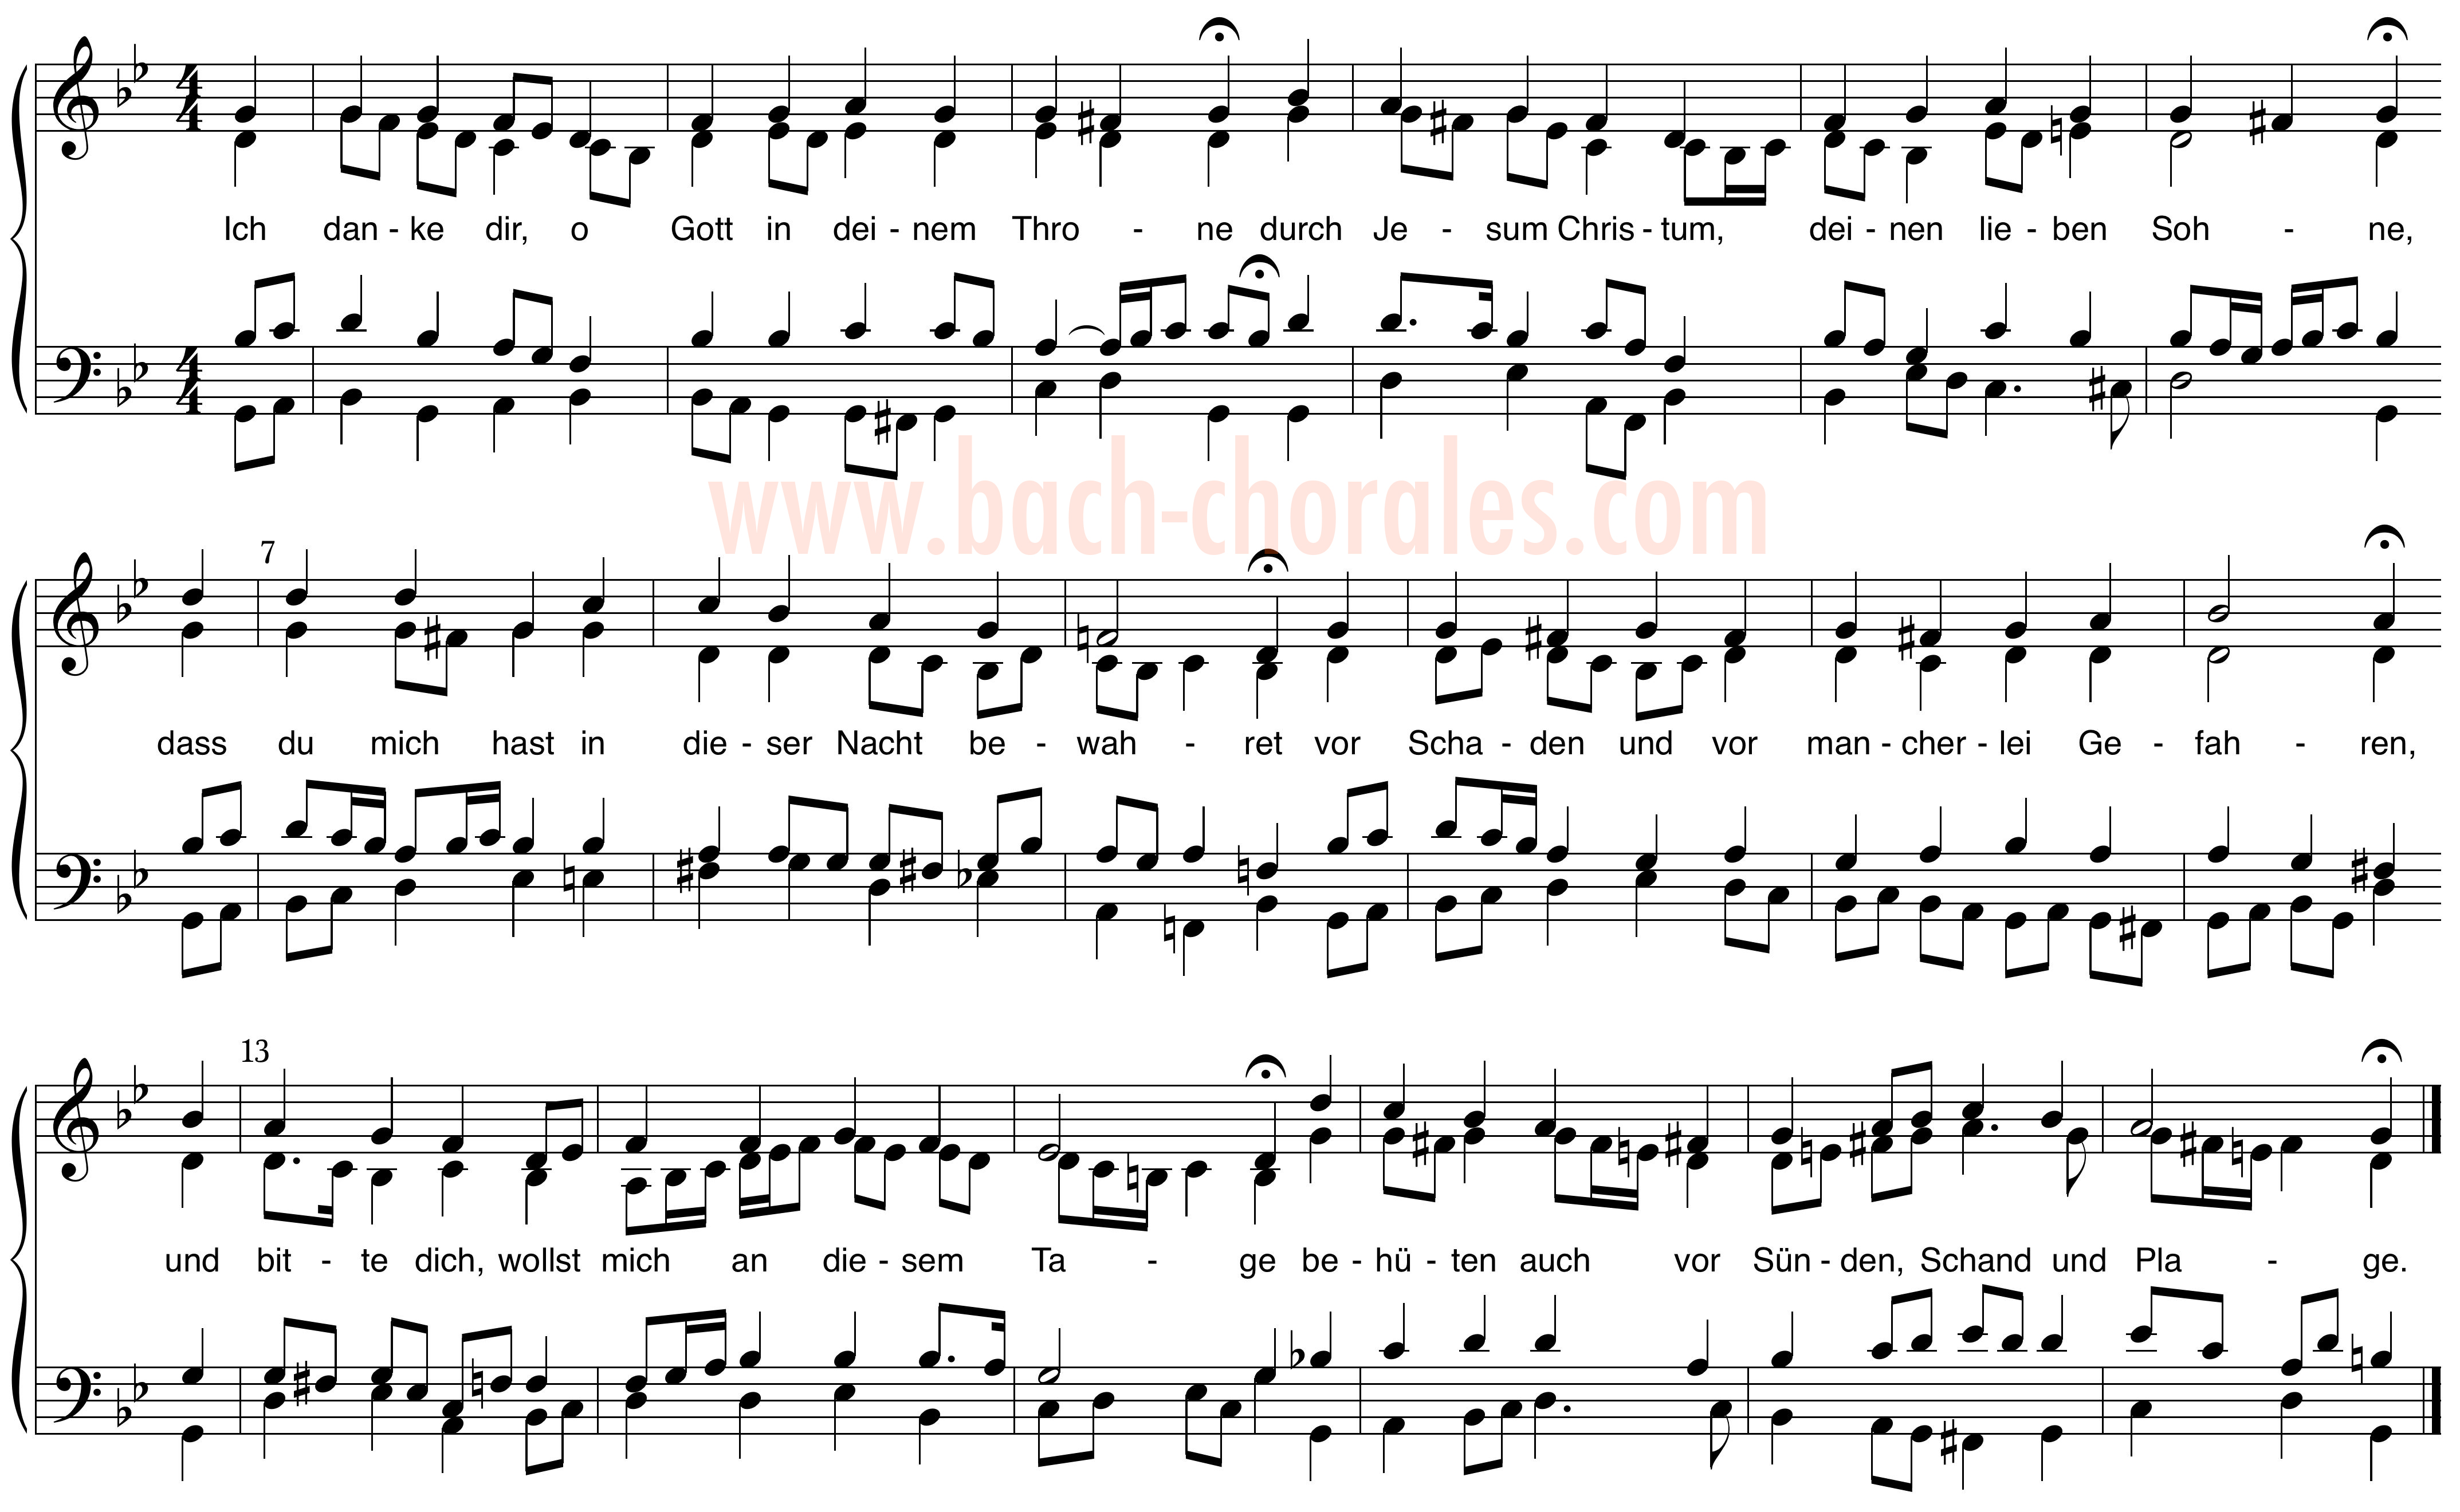 notenbeeld BWV 350 op https://www.bach-chorales.com/